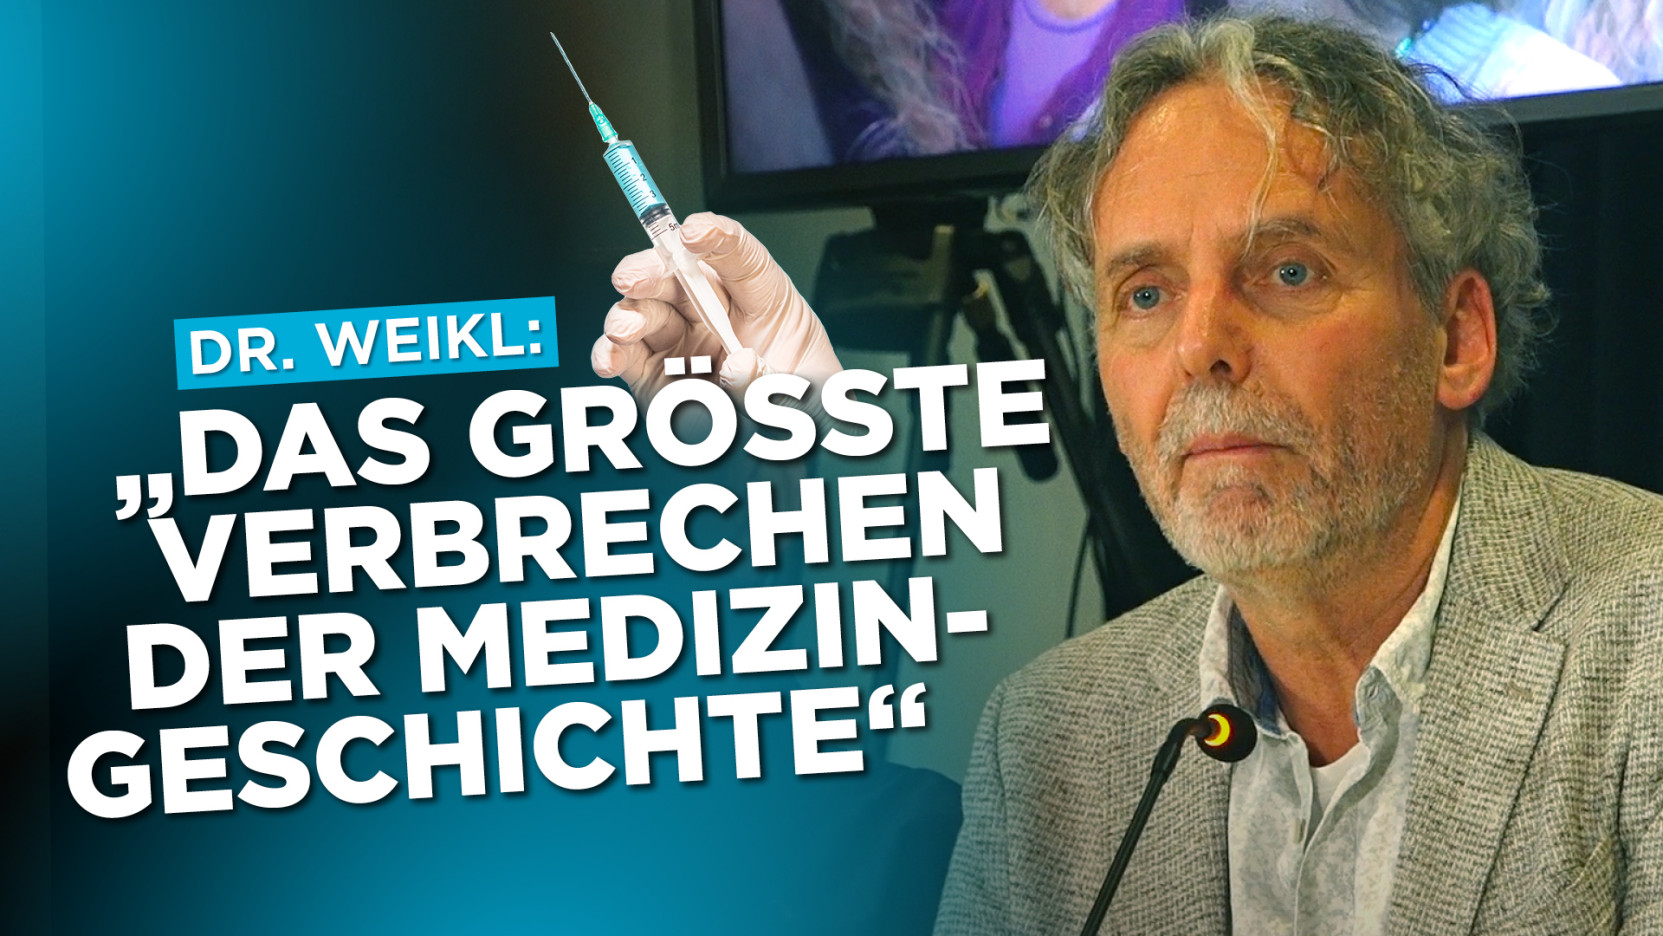 Dr. Weikl: “Das größte Verbrechen in der Medizingeschichte”